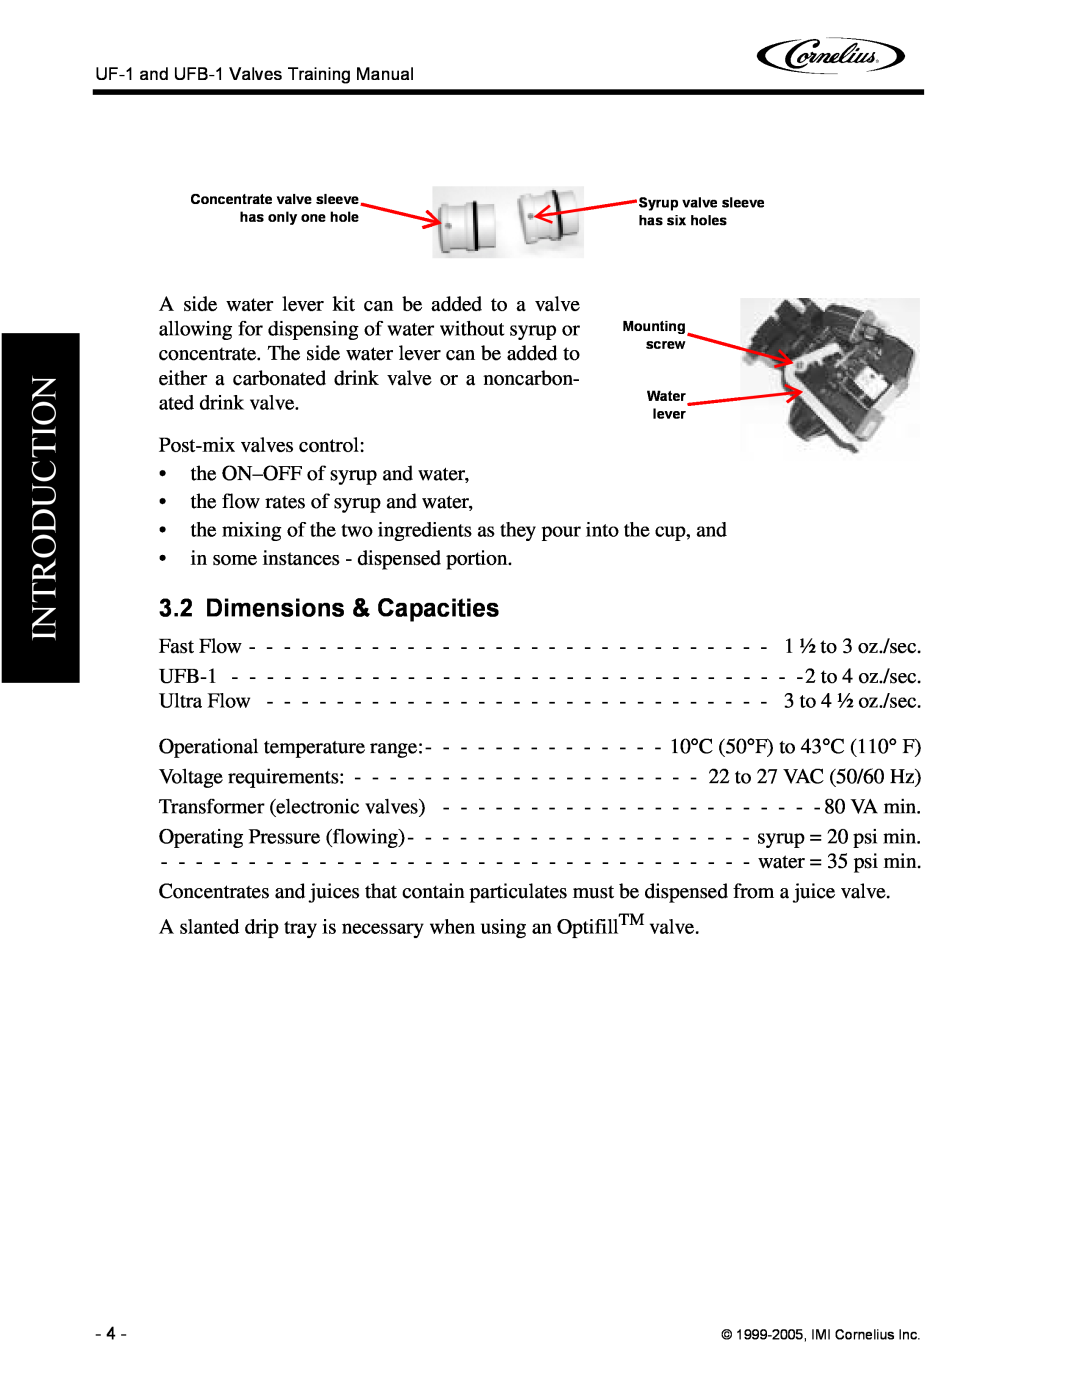 Cornelius UFB-1, UF-1 manual Dimensions & Capacities, Introduction 